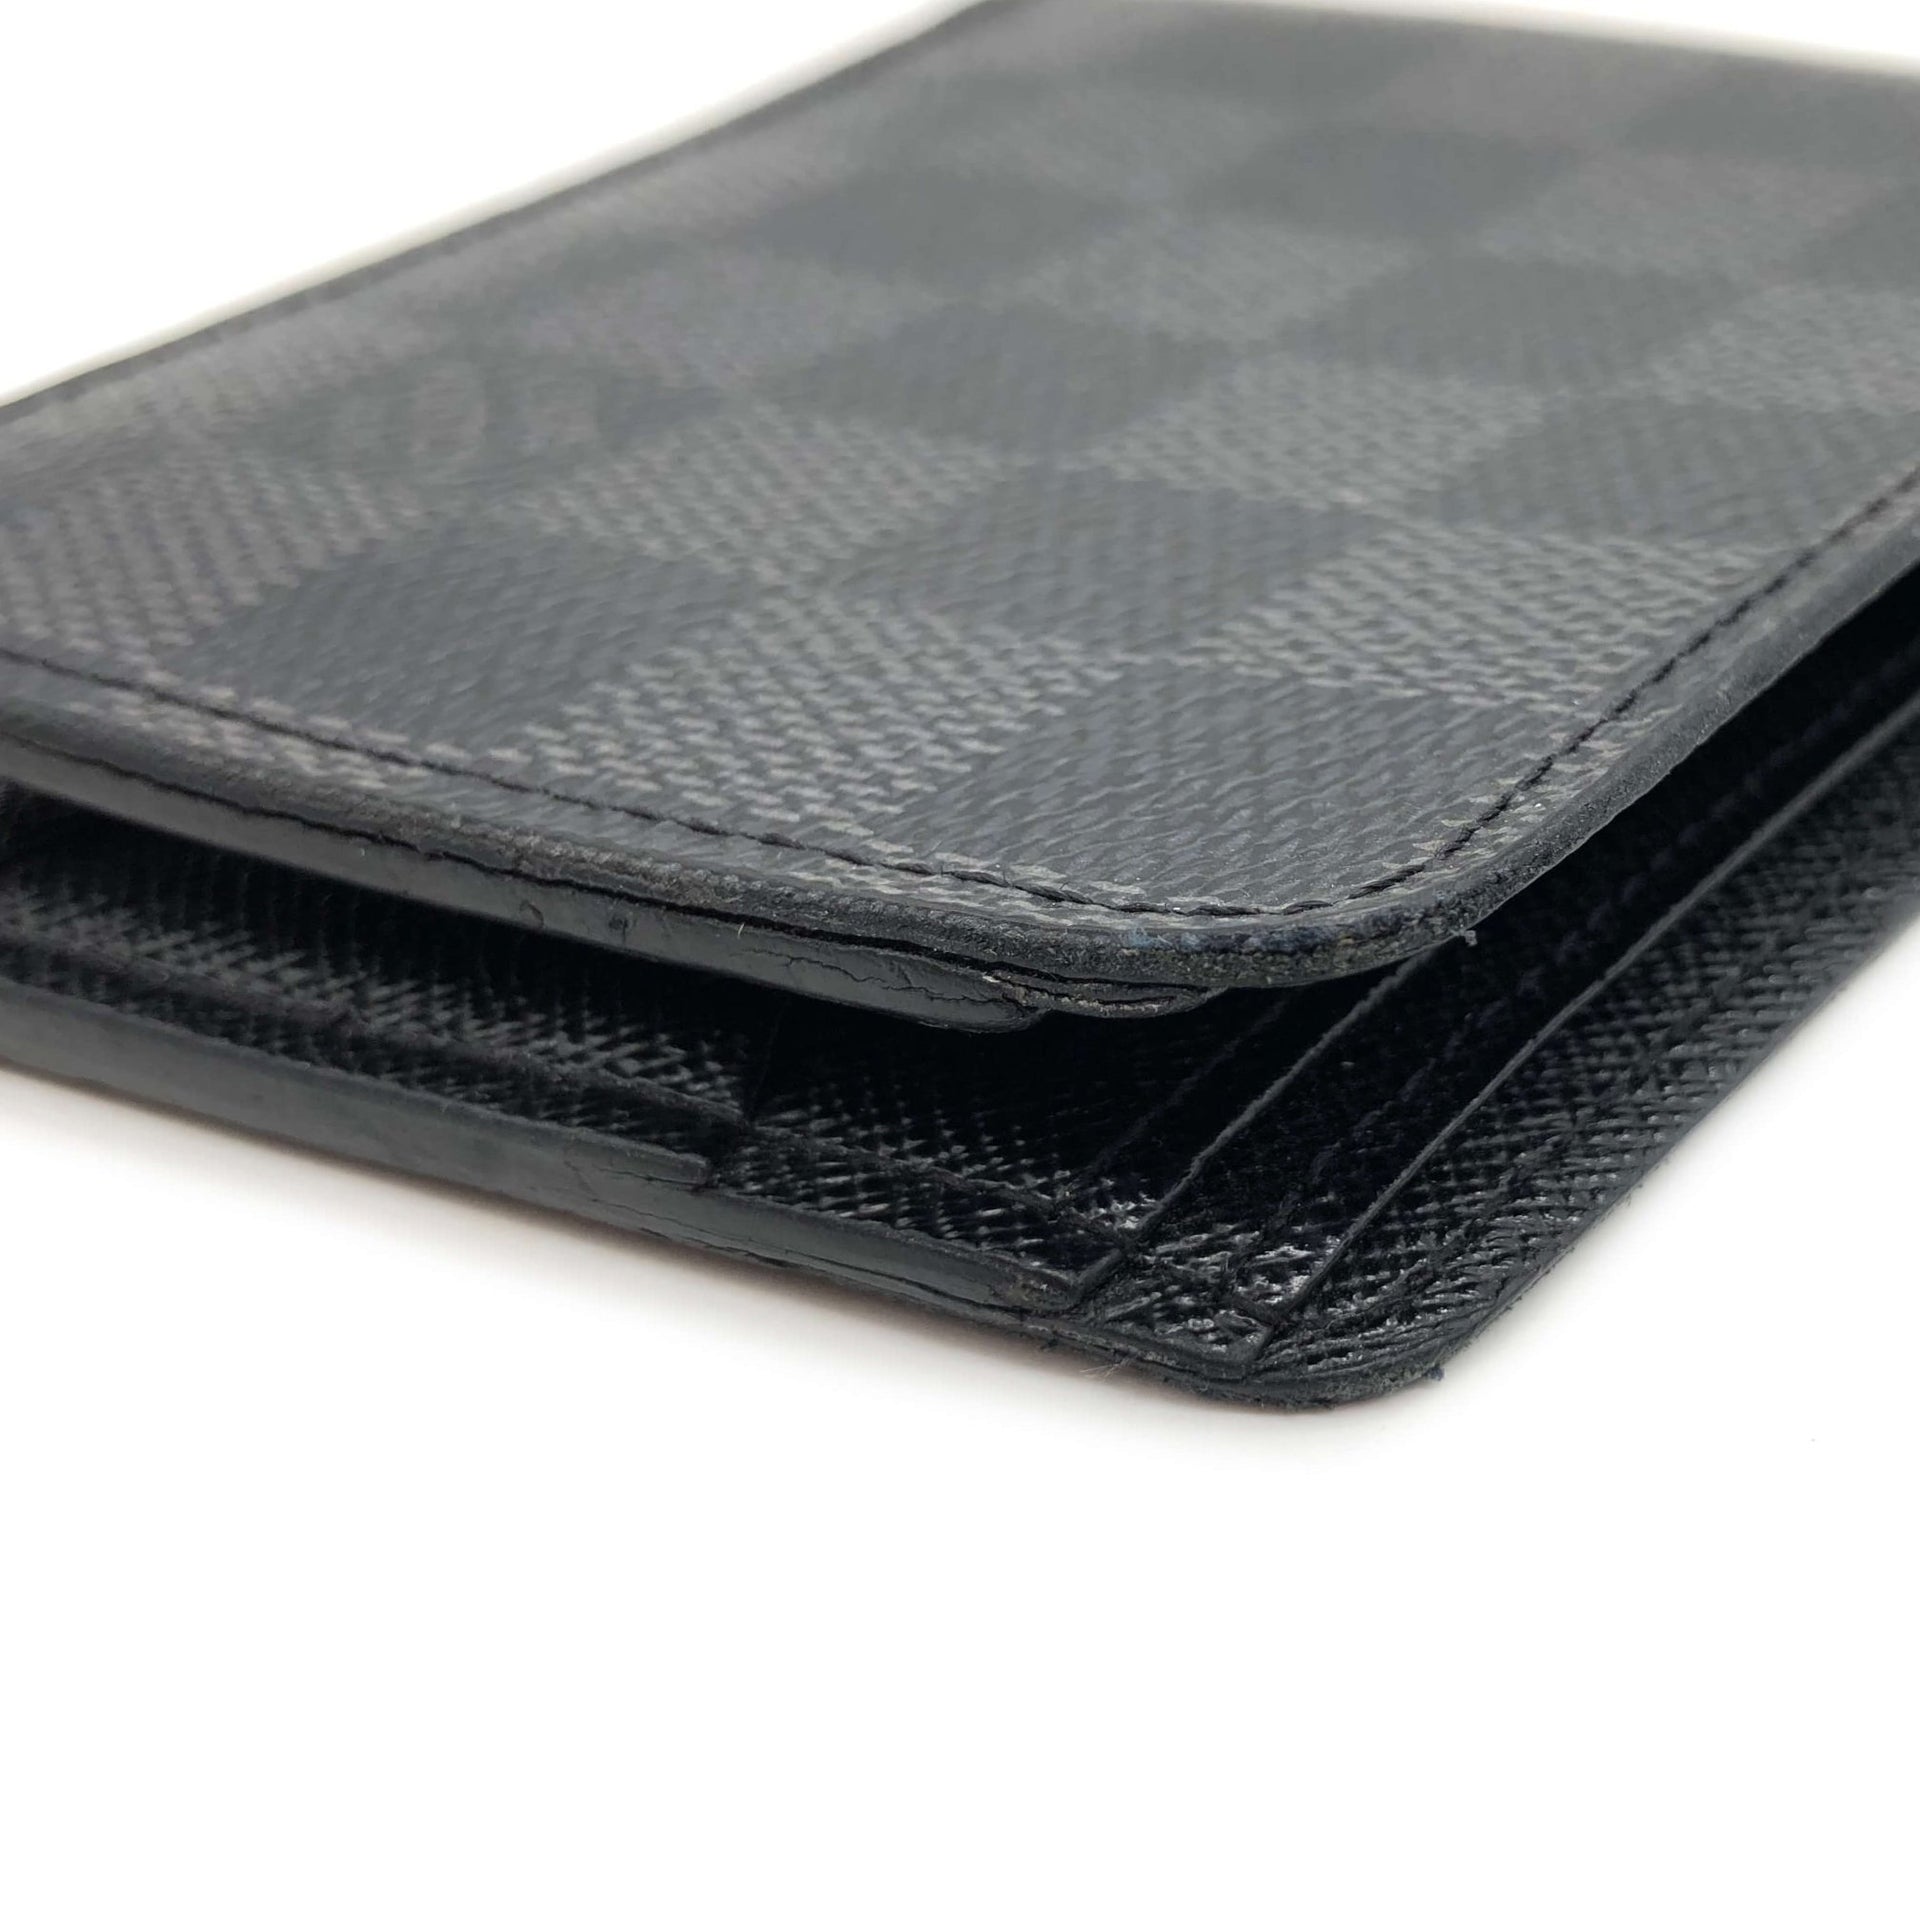 Designer Damier Graphite Canvas Black Leather Card Holder For Men